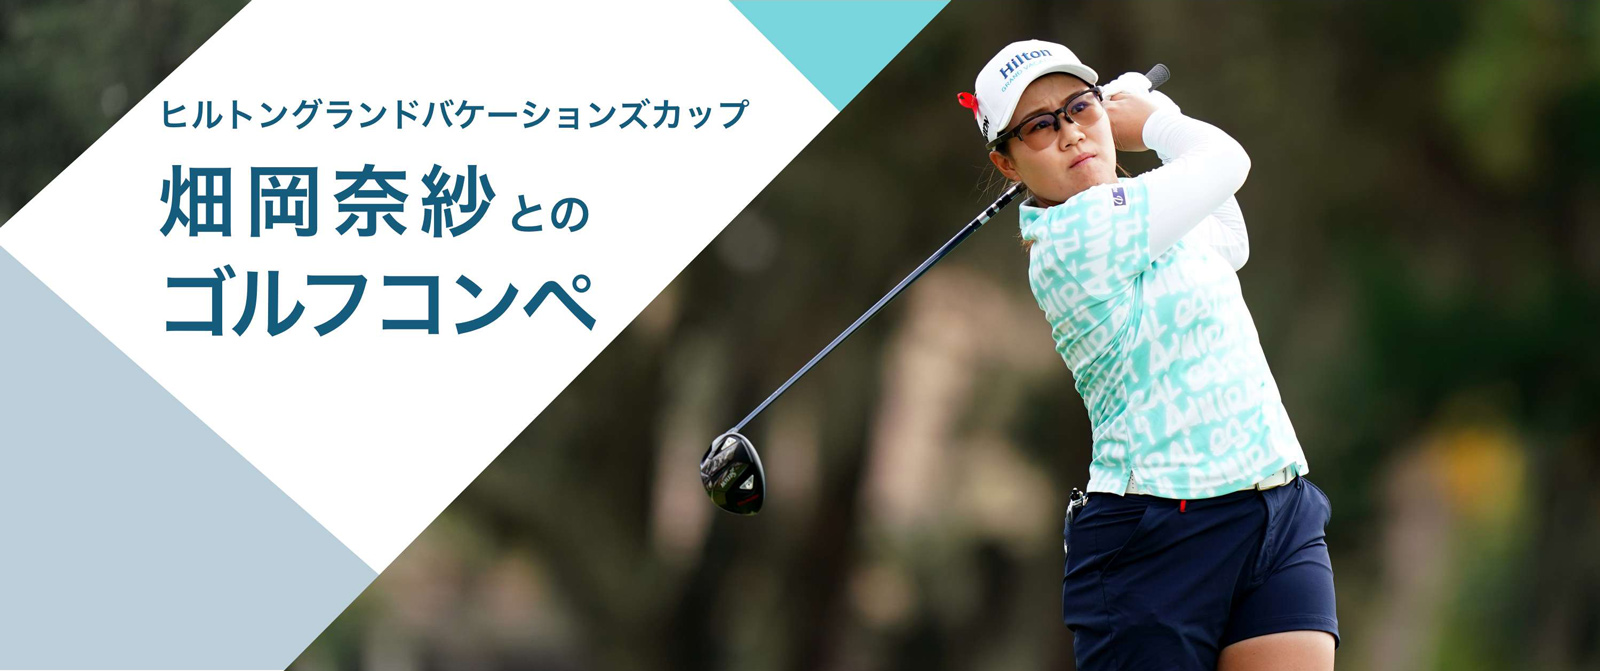 世界で活躍する畑岡奈紗との夢のゴルフコンペ